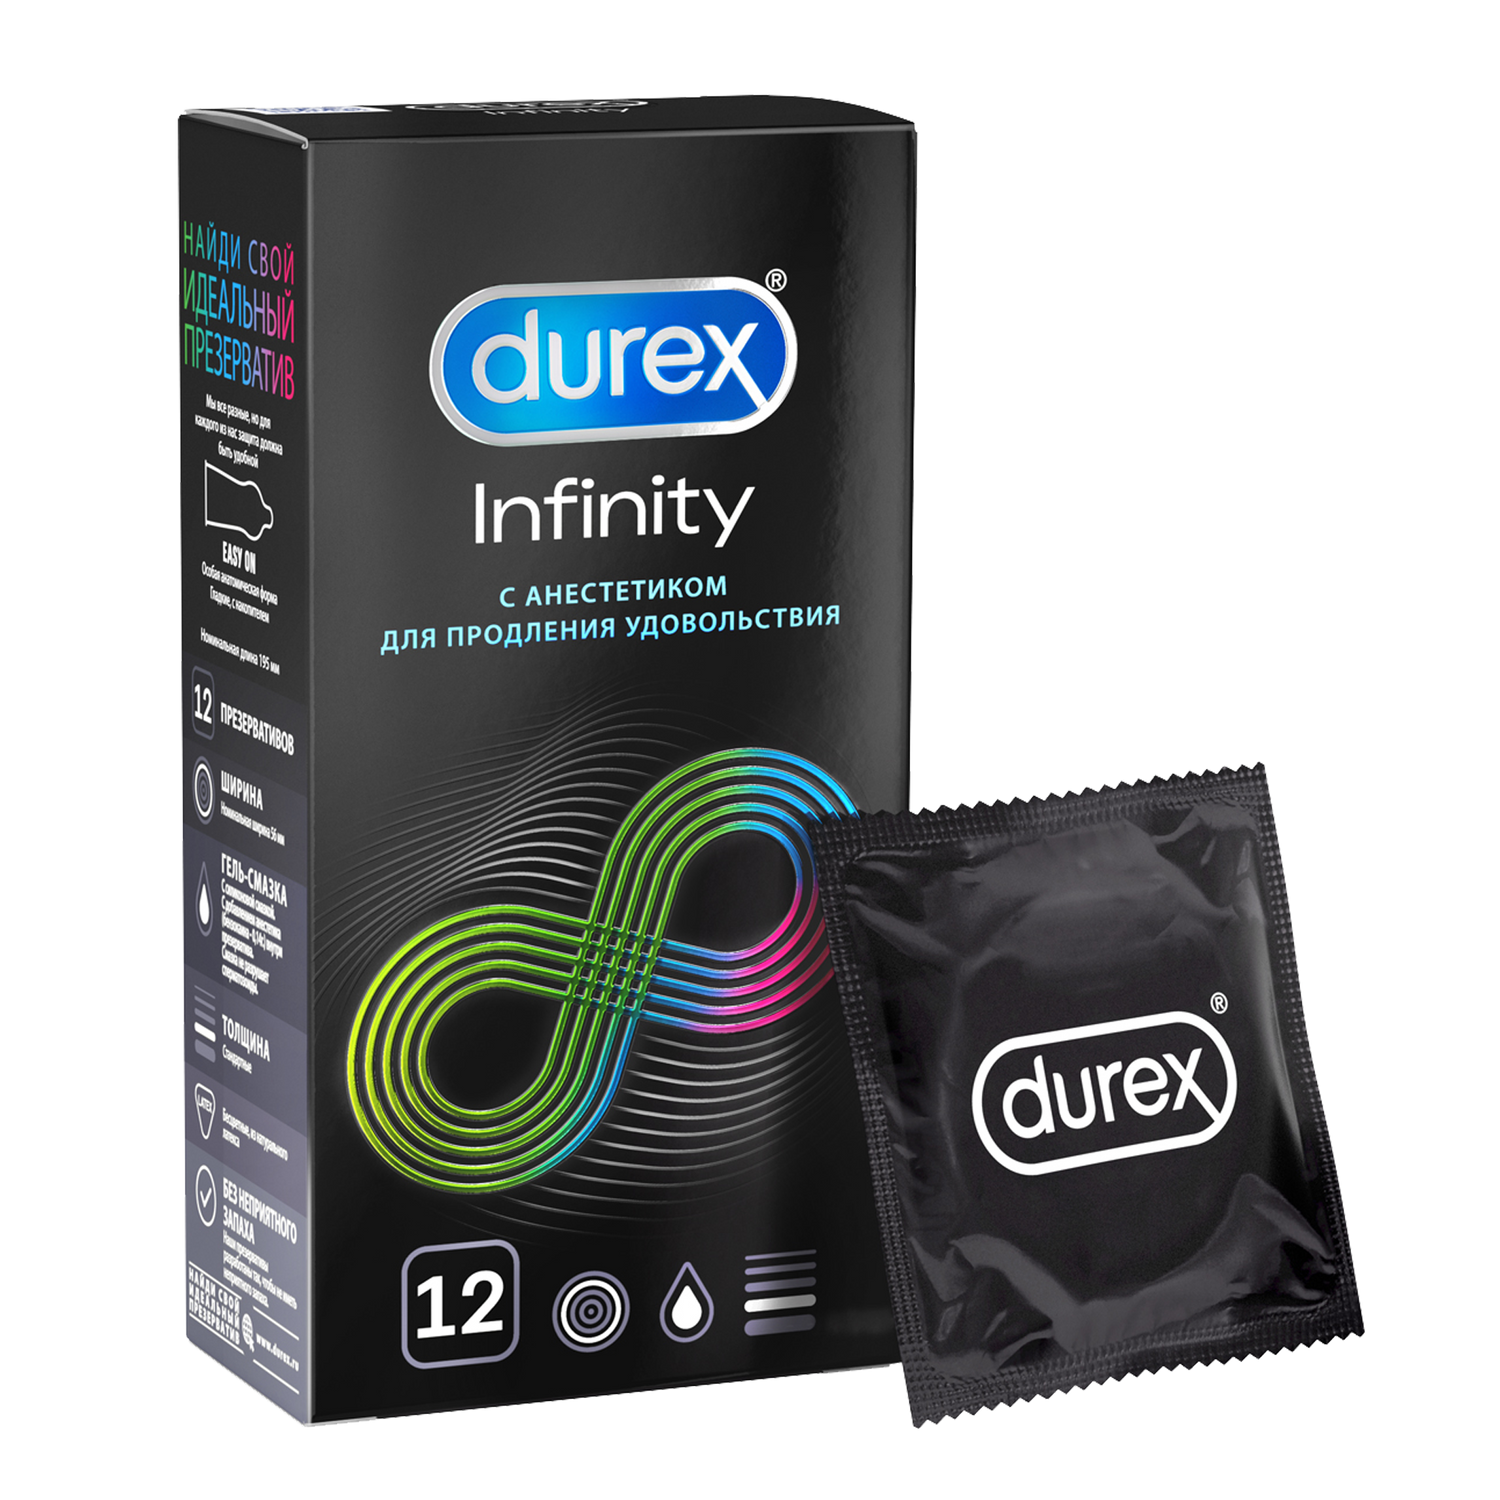 Презервативы Durex Infinity гладкие с анестетиком, 12 шт.